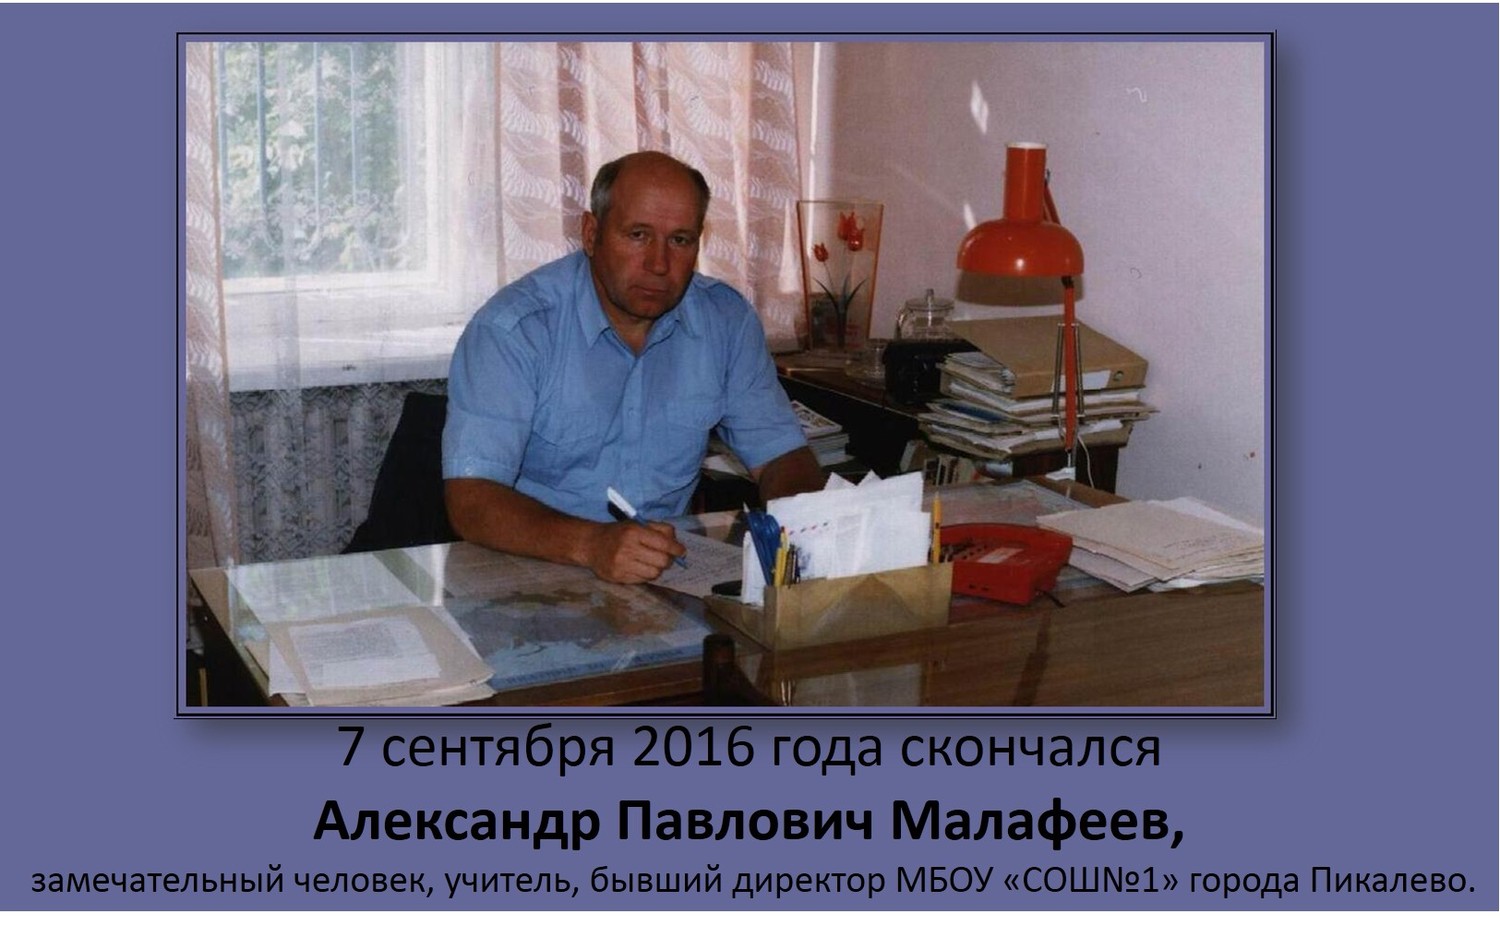 7 сентября 2016 года ушел из жизни Александр Павлович Малафеев. Некролог.